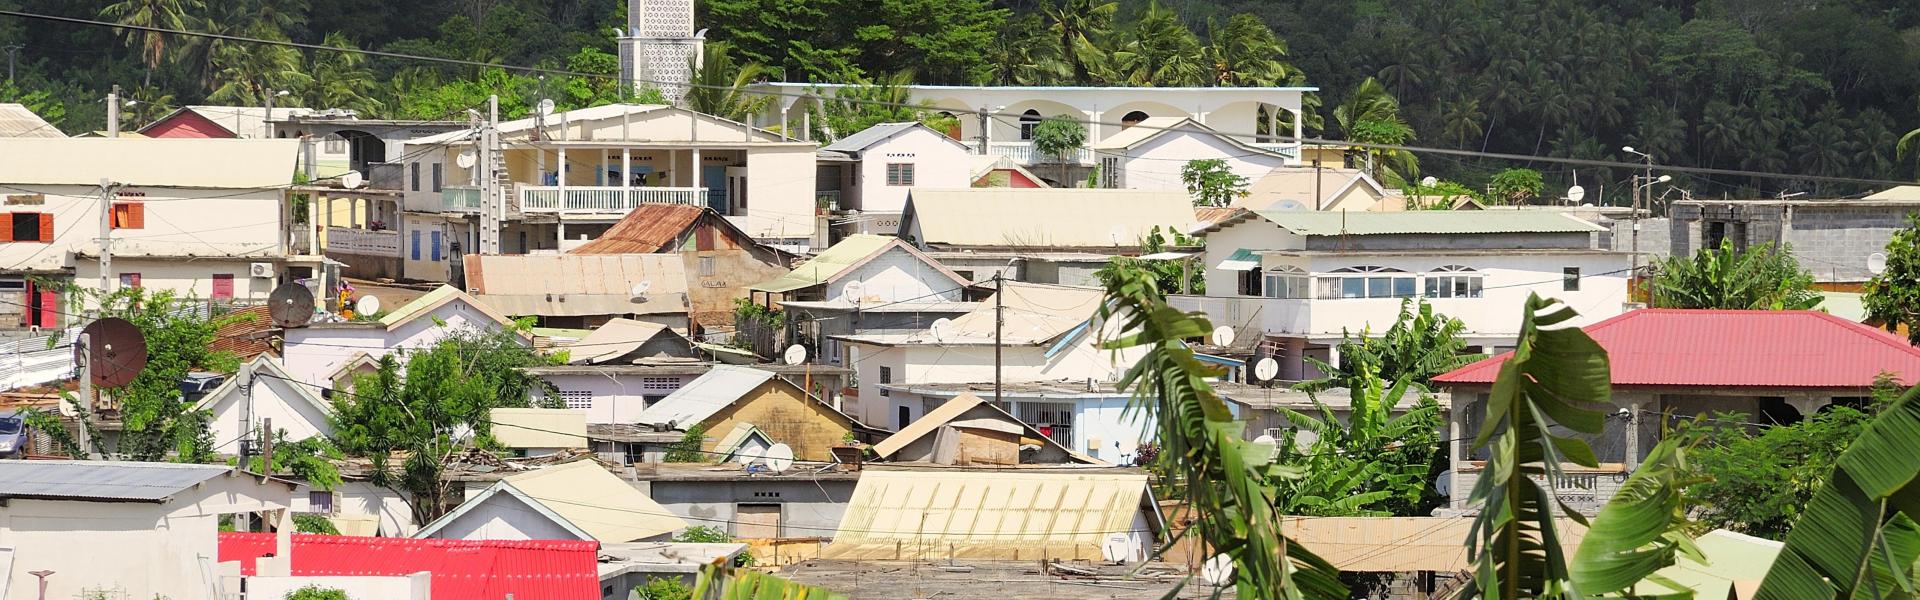 Locations de vacances et appartements à Mayotte - Wimdu